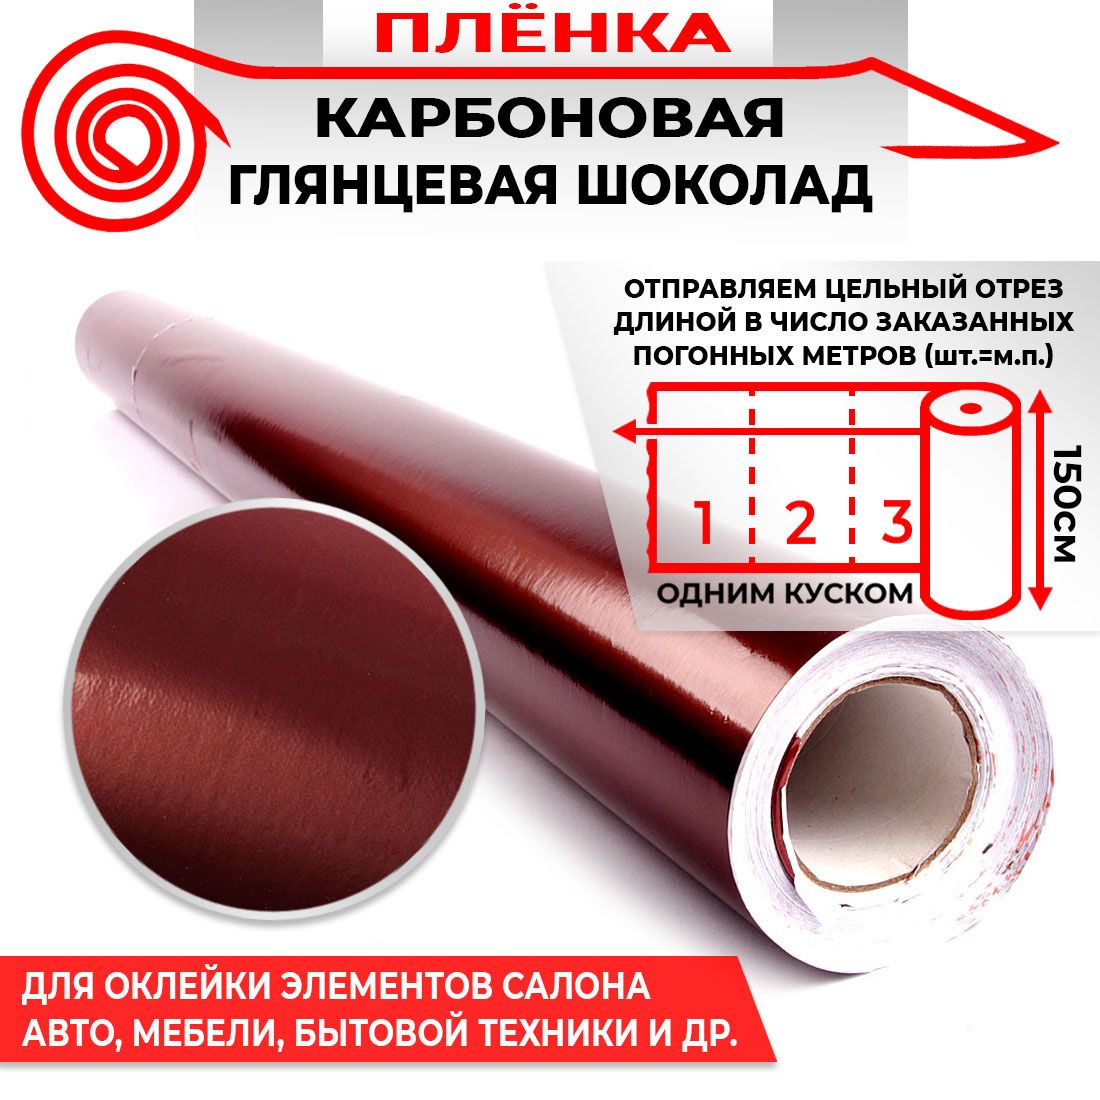 Пленка карбоновая глянецевая - Шоколад 160мкм 1.5м х 1п.м